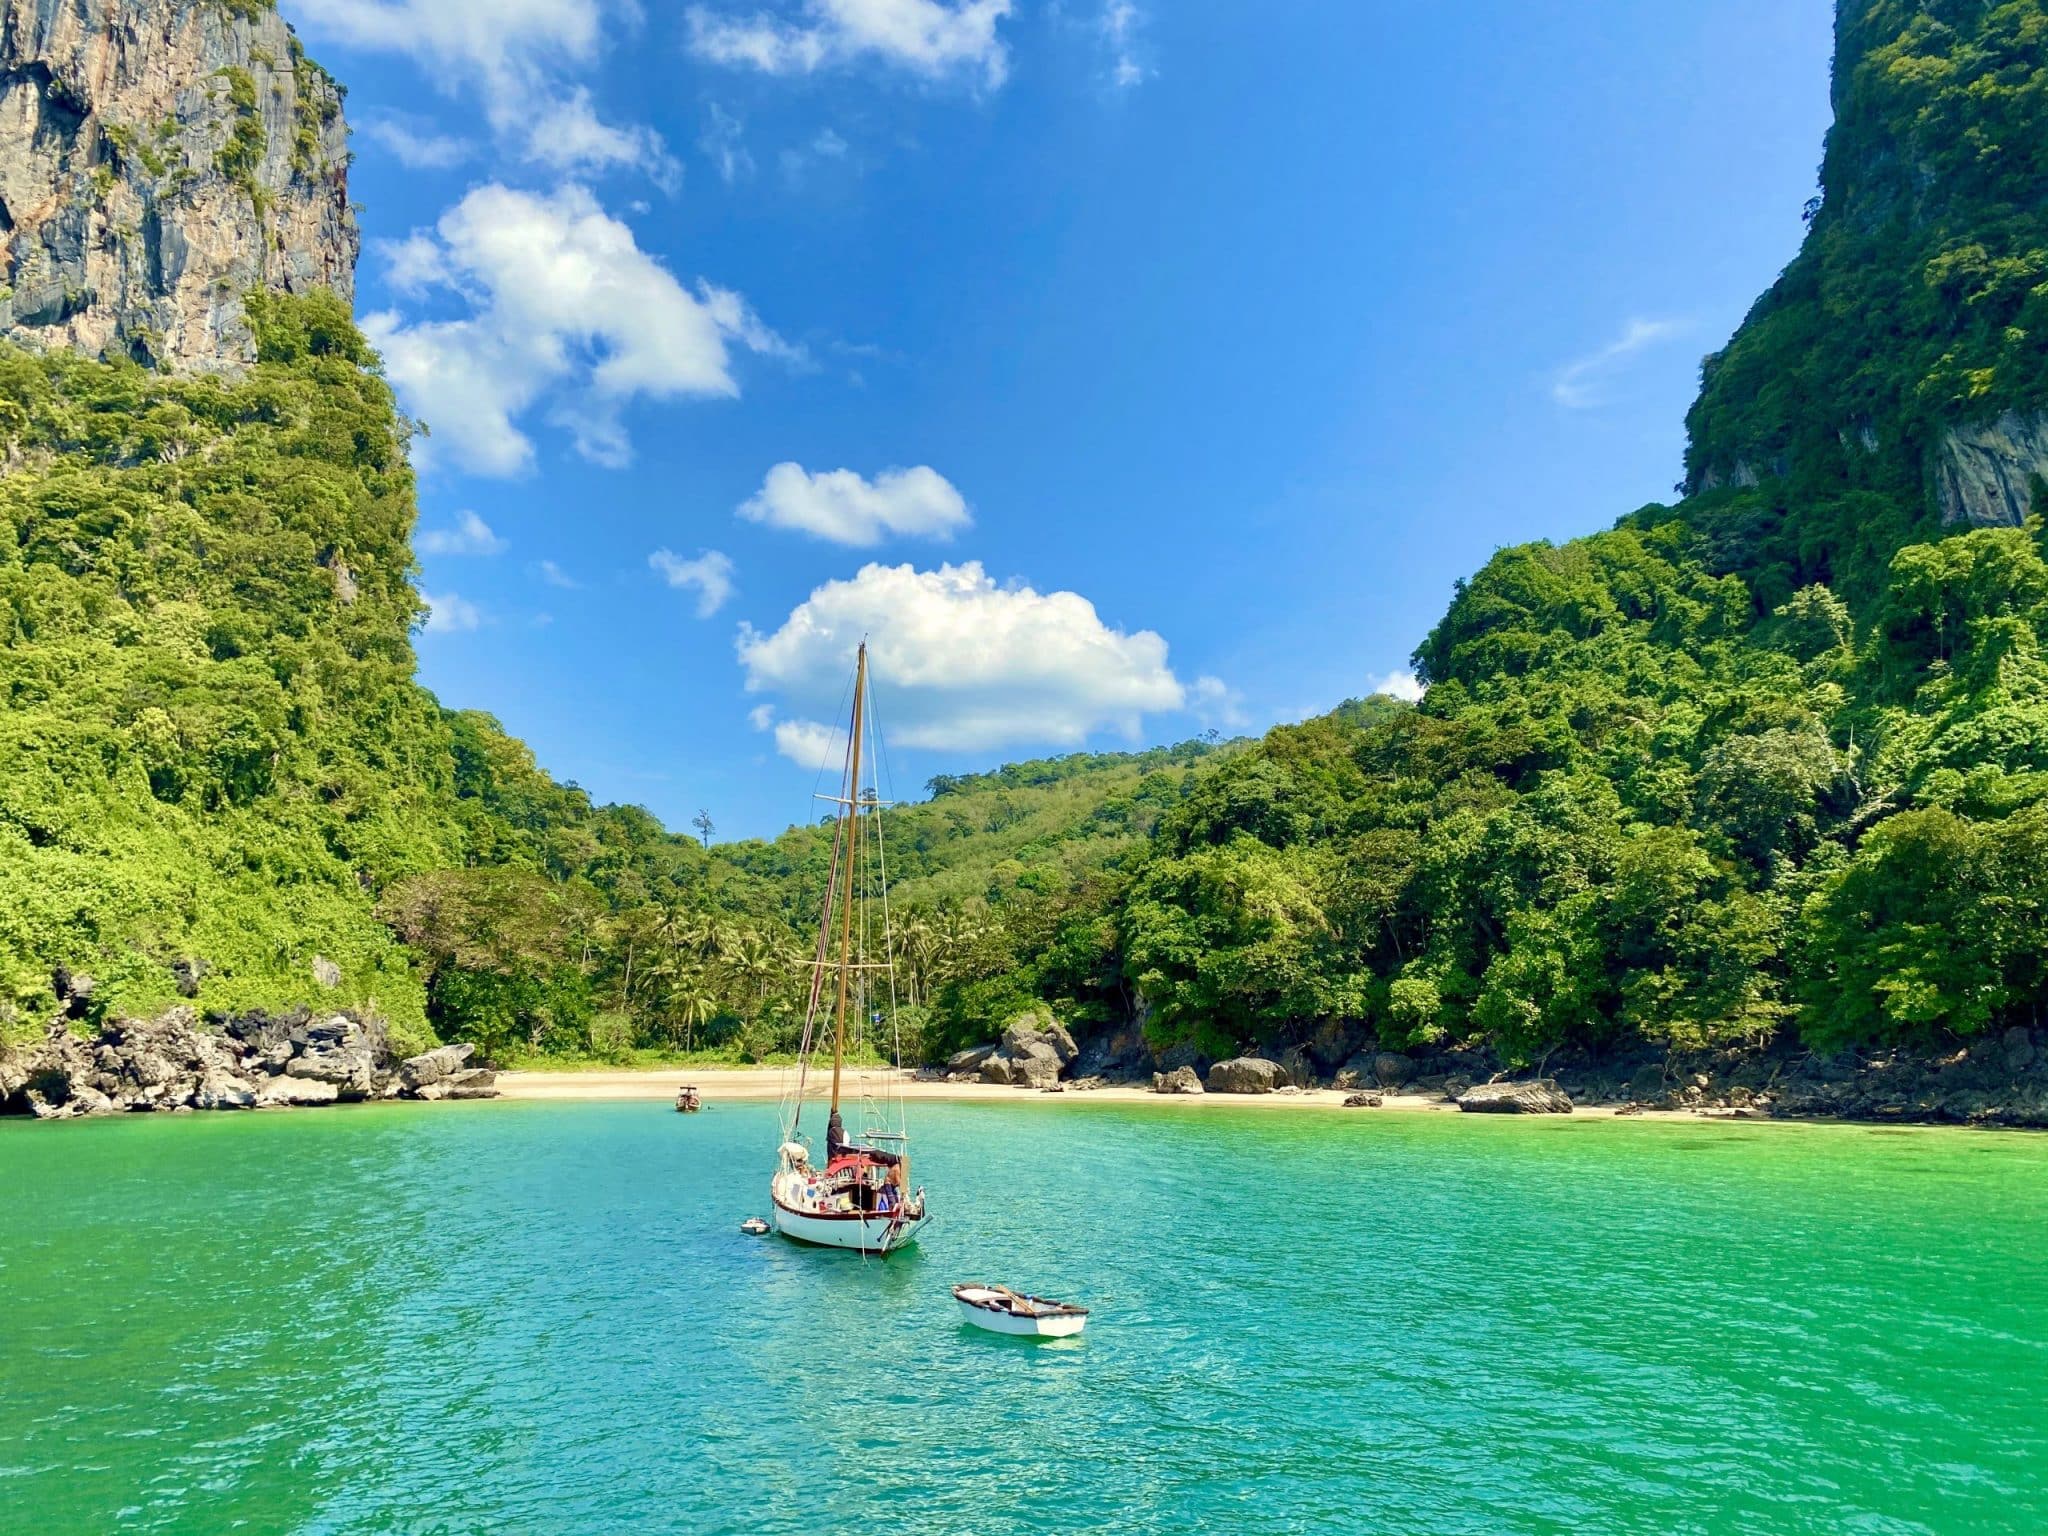 De smukkeste øer i Thailand – ø-ferie i paradis?